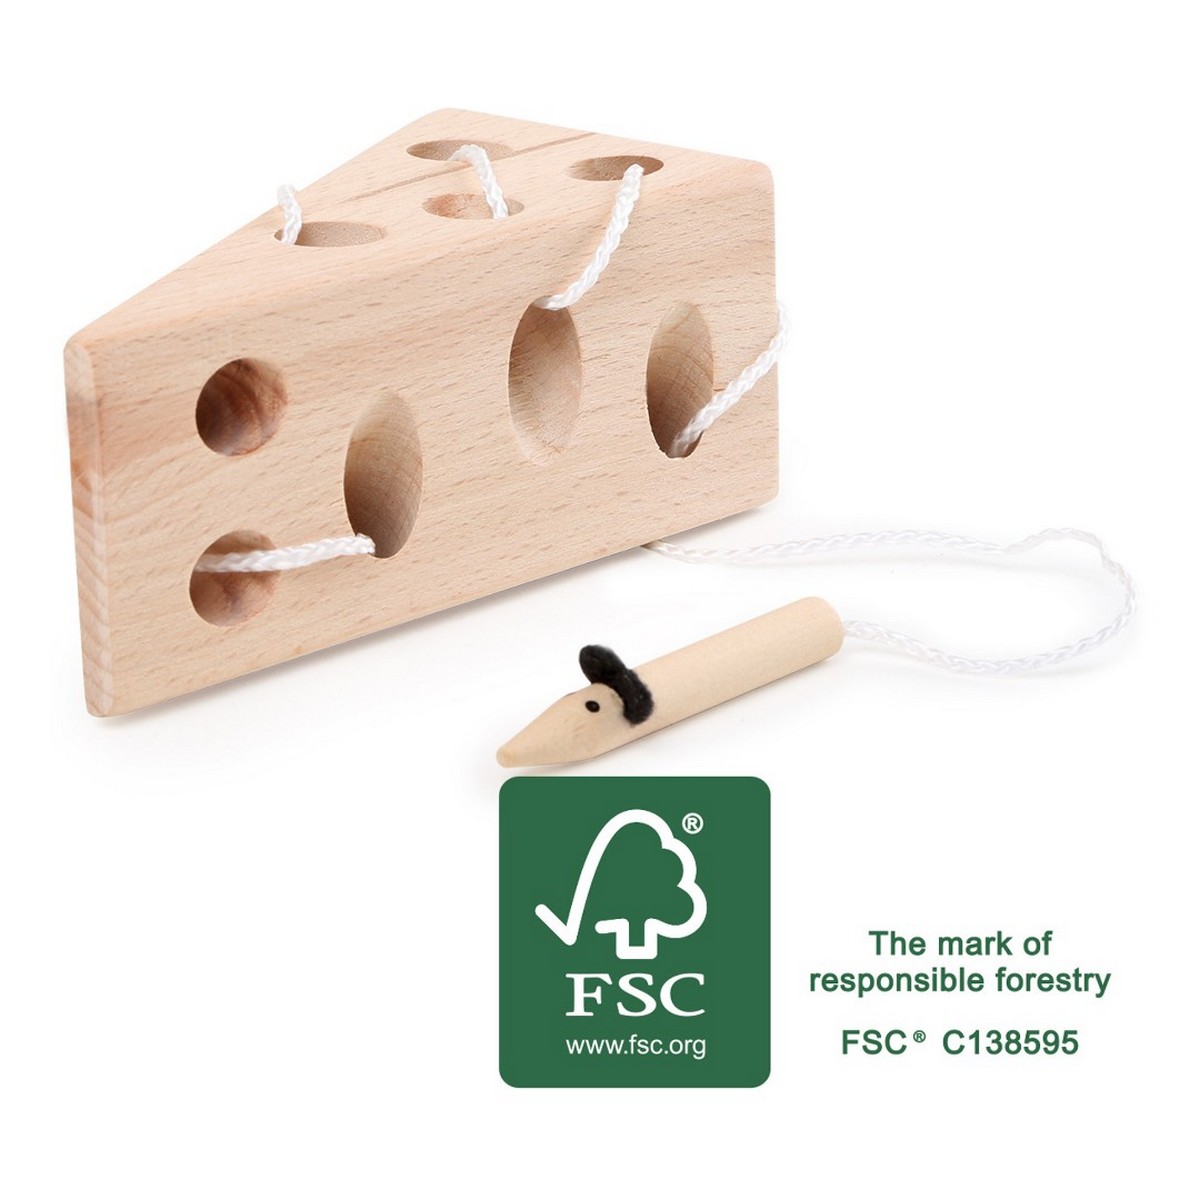 legler jeu en bois le fromage et la souris un jeu small foot une idee cadeau chez ugo et lea (2)